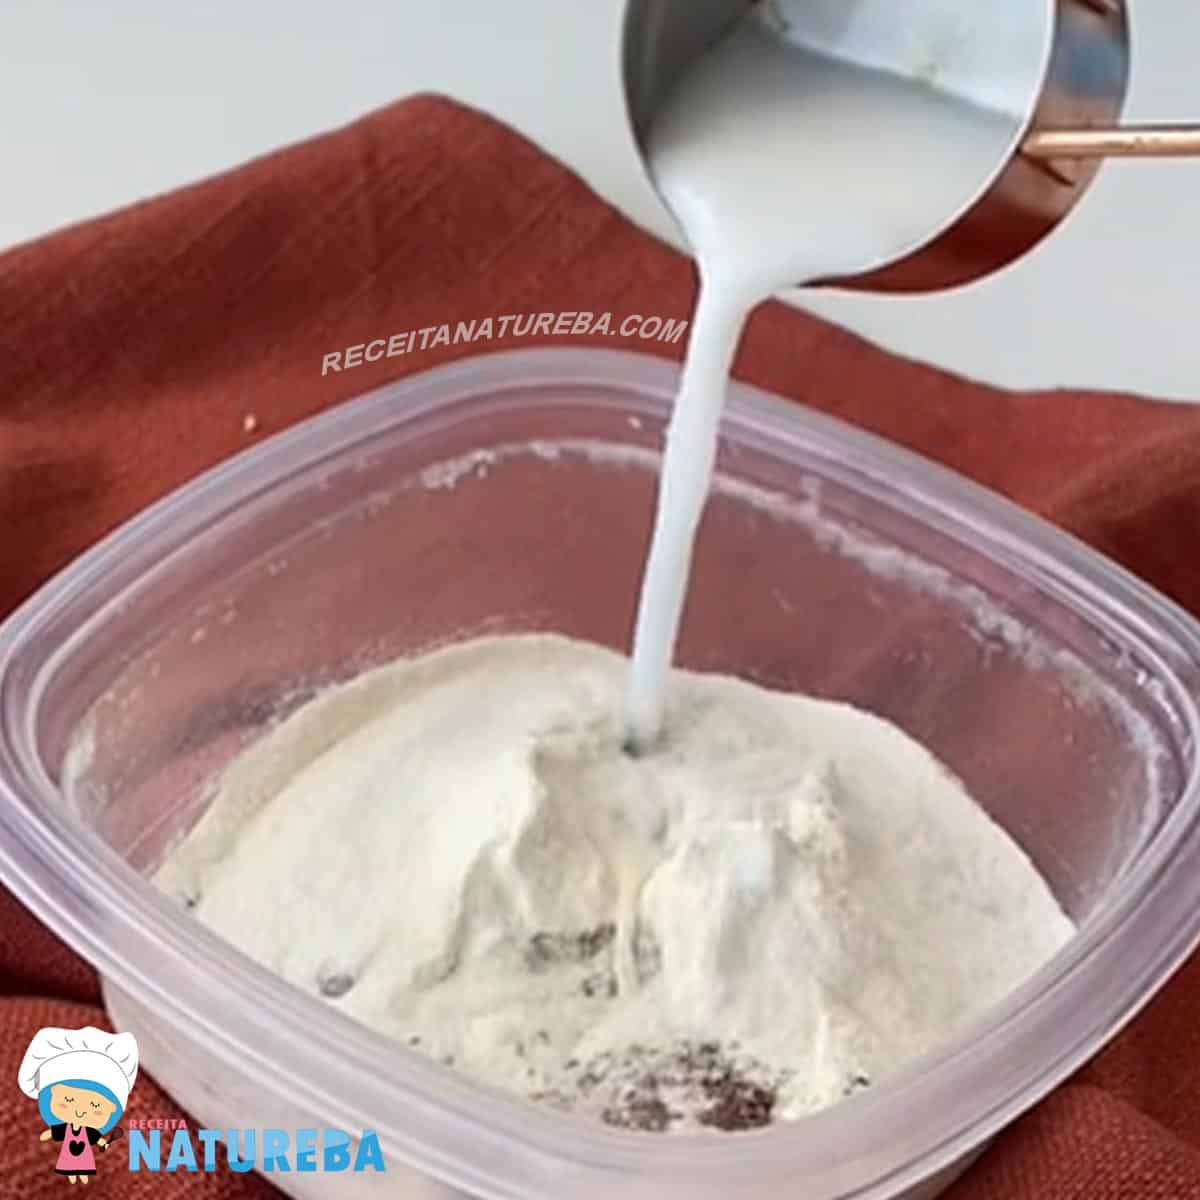 adicionando o leite na mistura dos ingredientes seco para o bolo de caneca sem leite